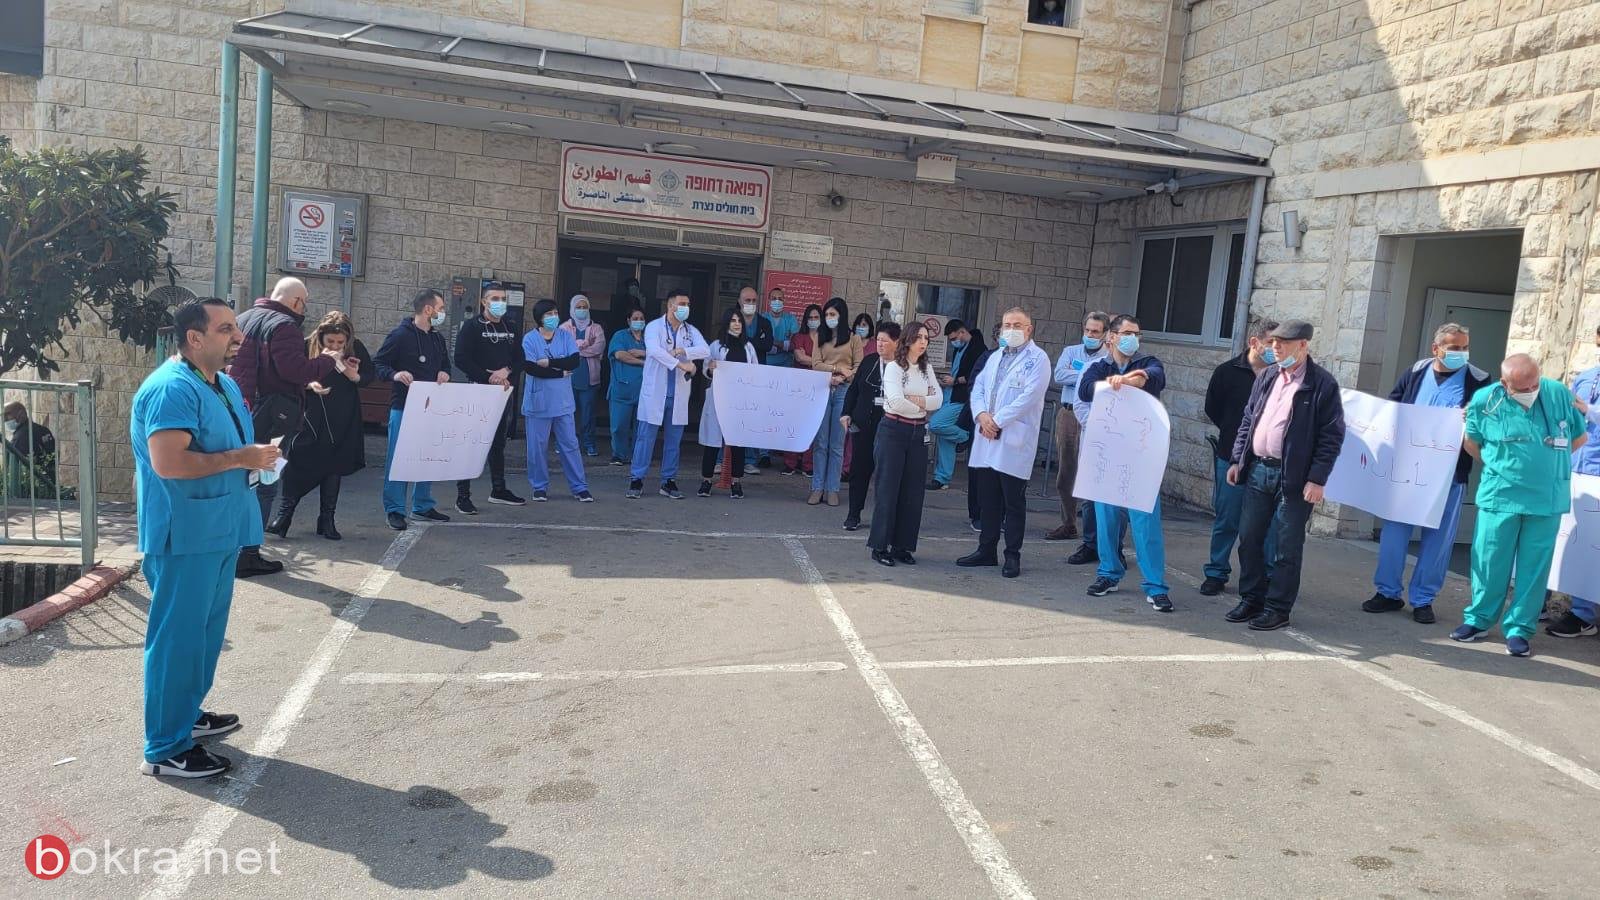 وقفة احتجاجية بعد الإعتداء على ممرض في مستشفى الناصرة-الإنجليزي-2